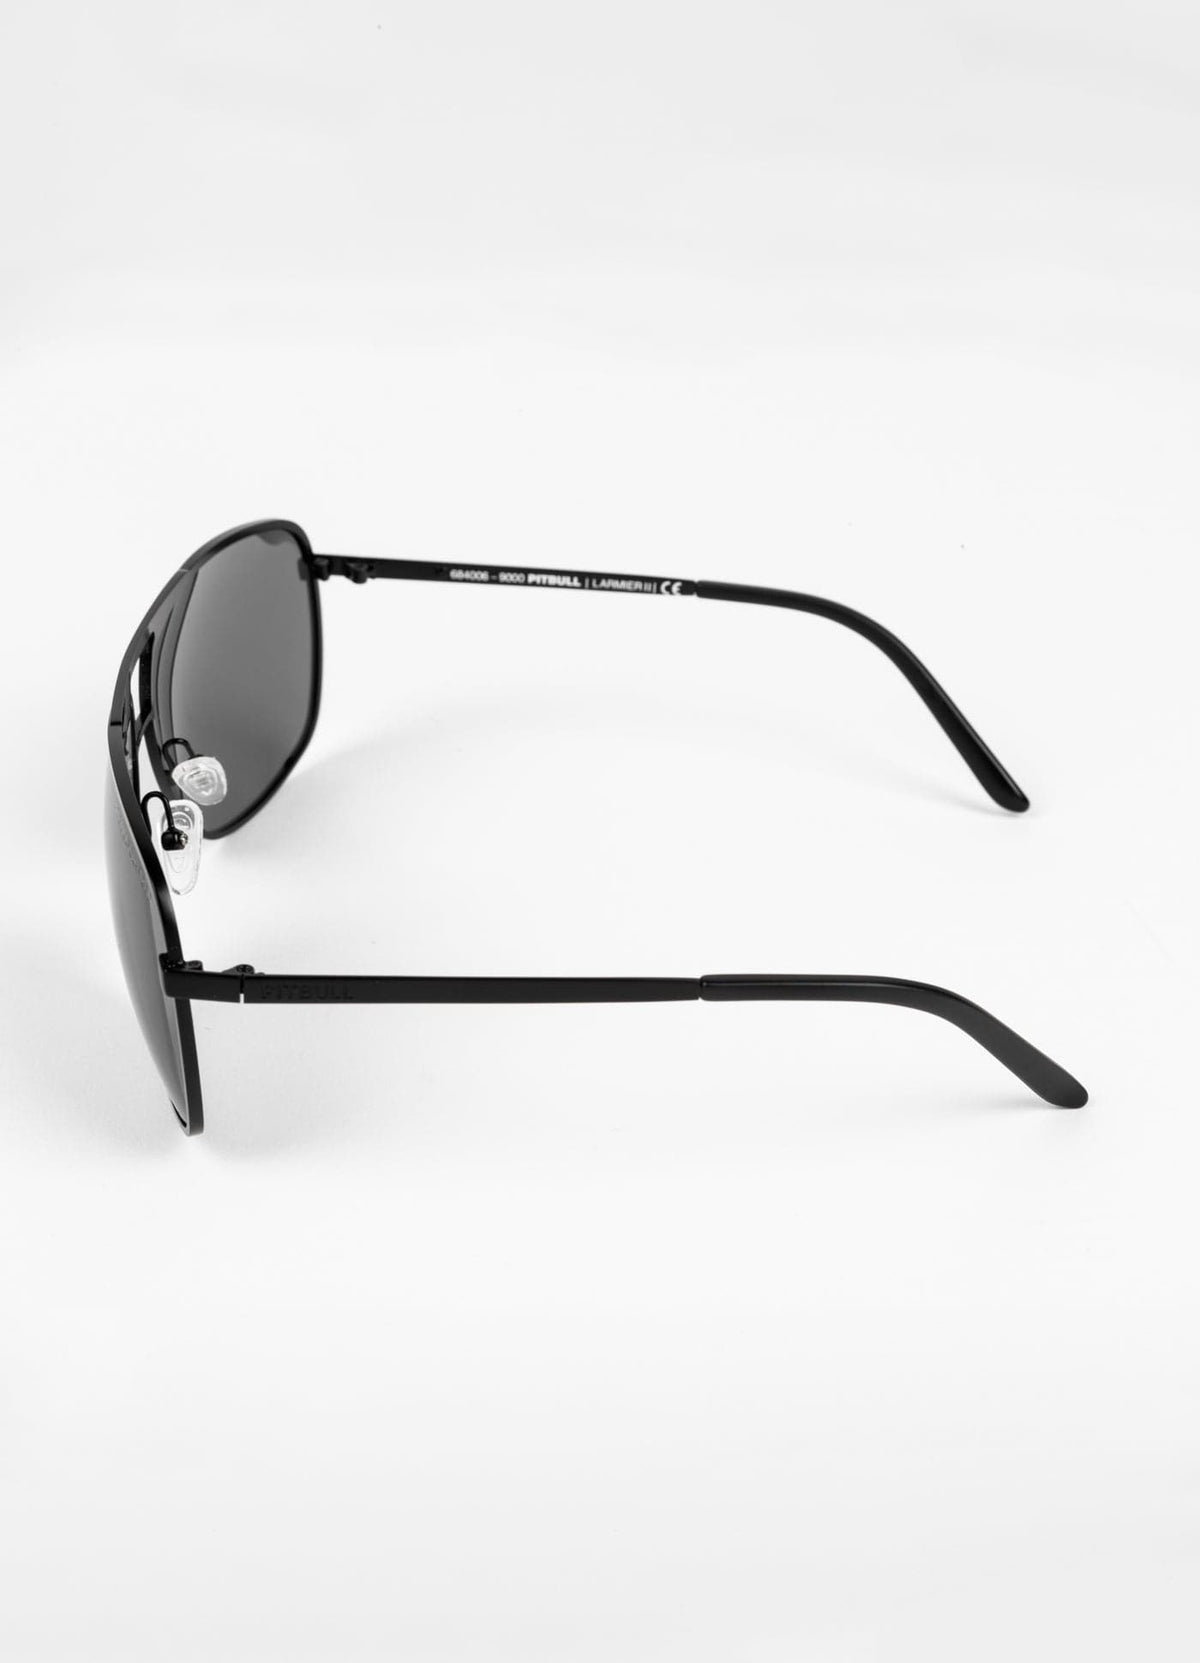 LARMIER 2 Black Sunglasses